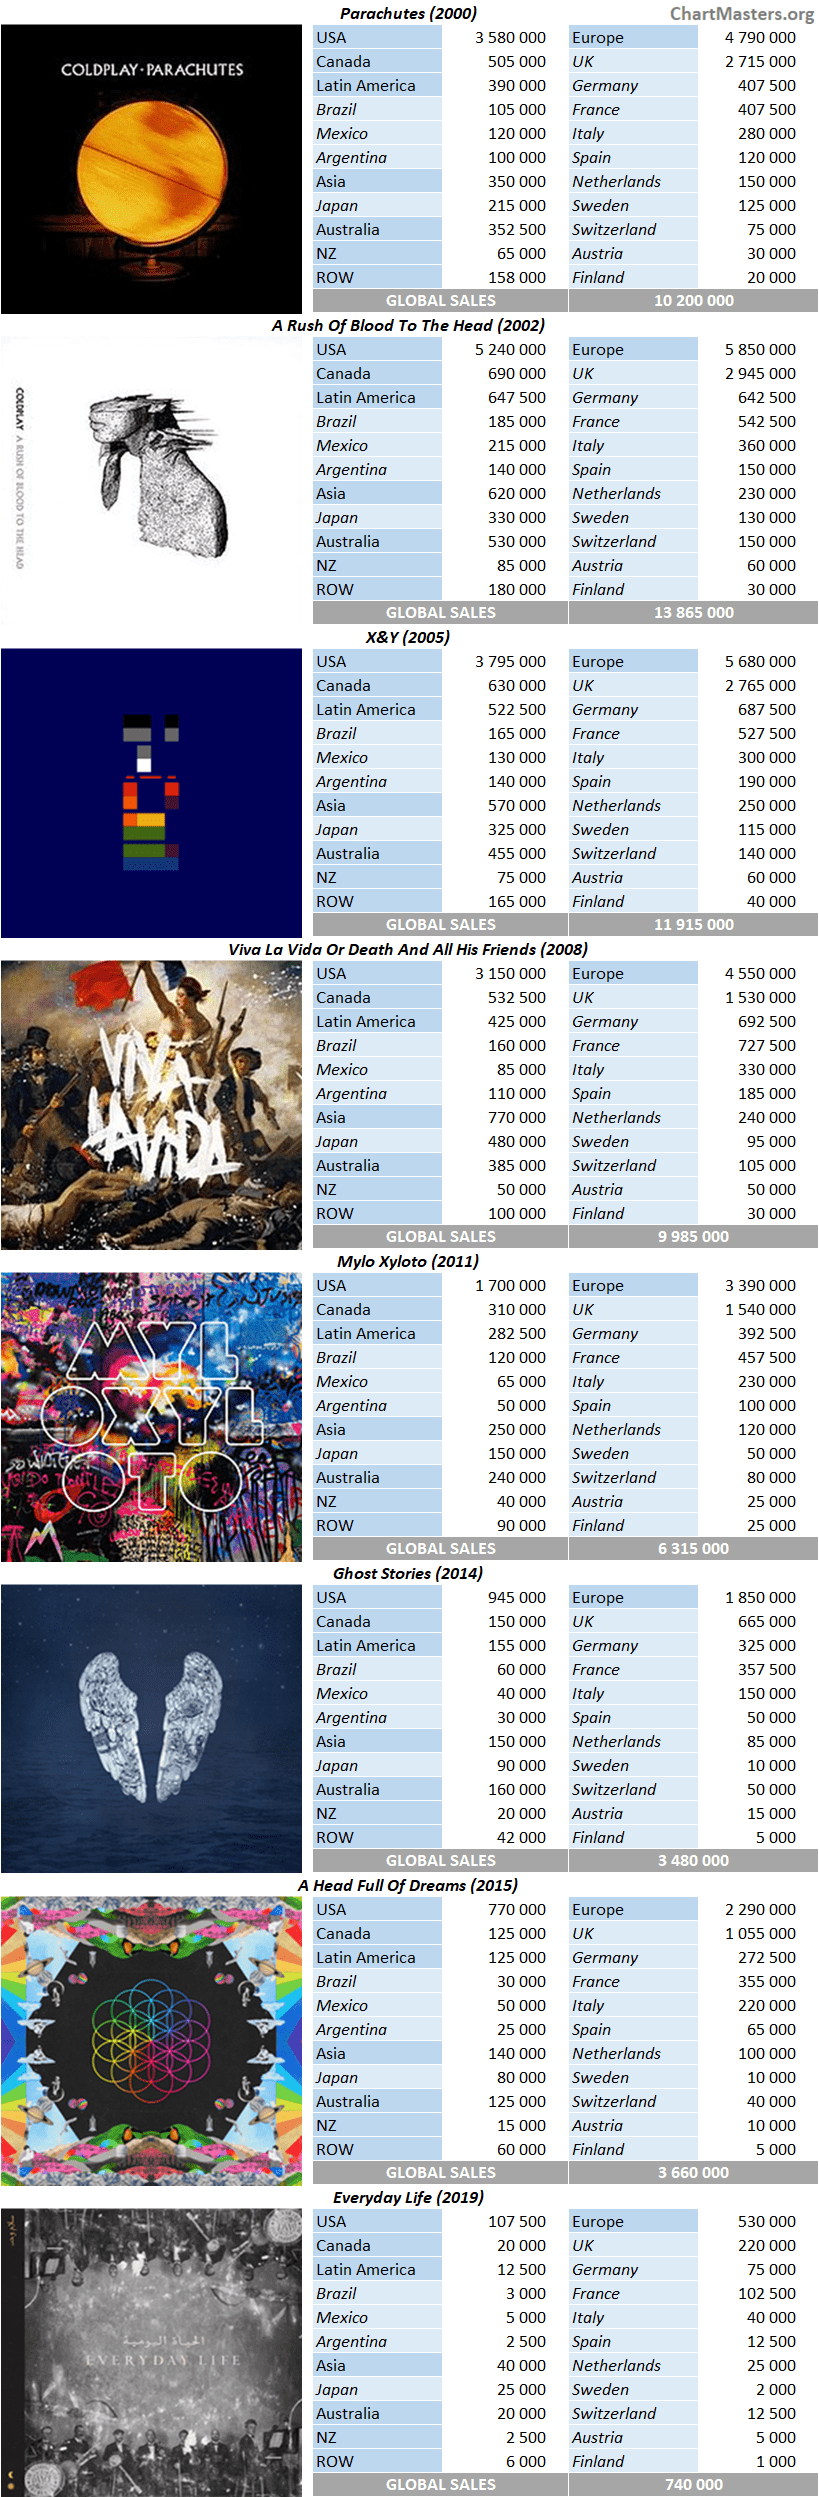 CSPC Coldplay 2021 album sales by market